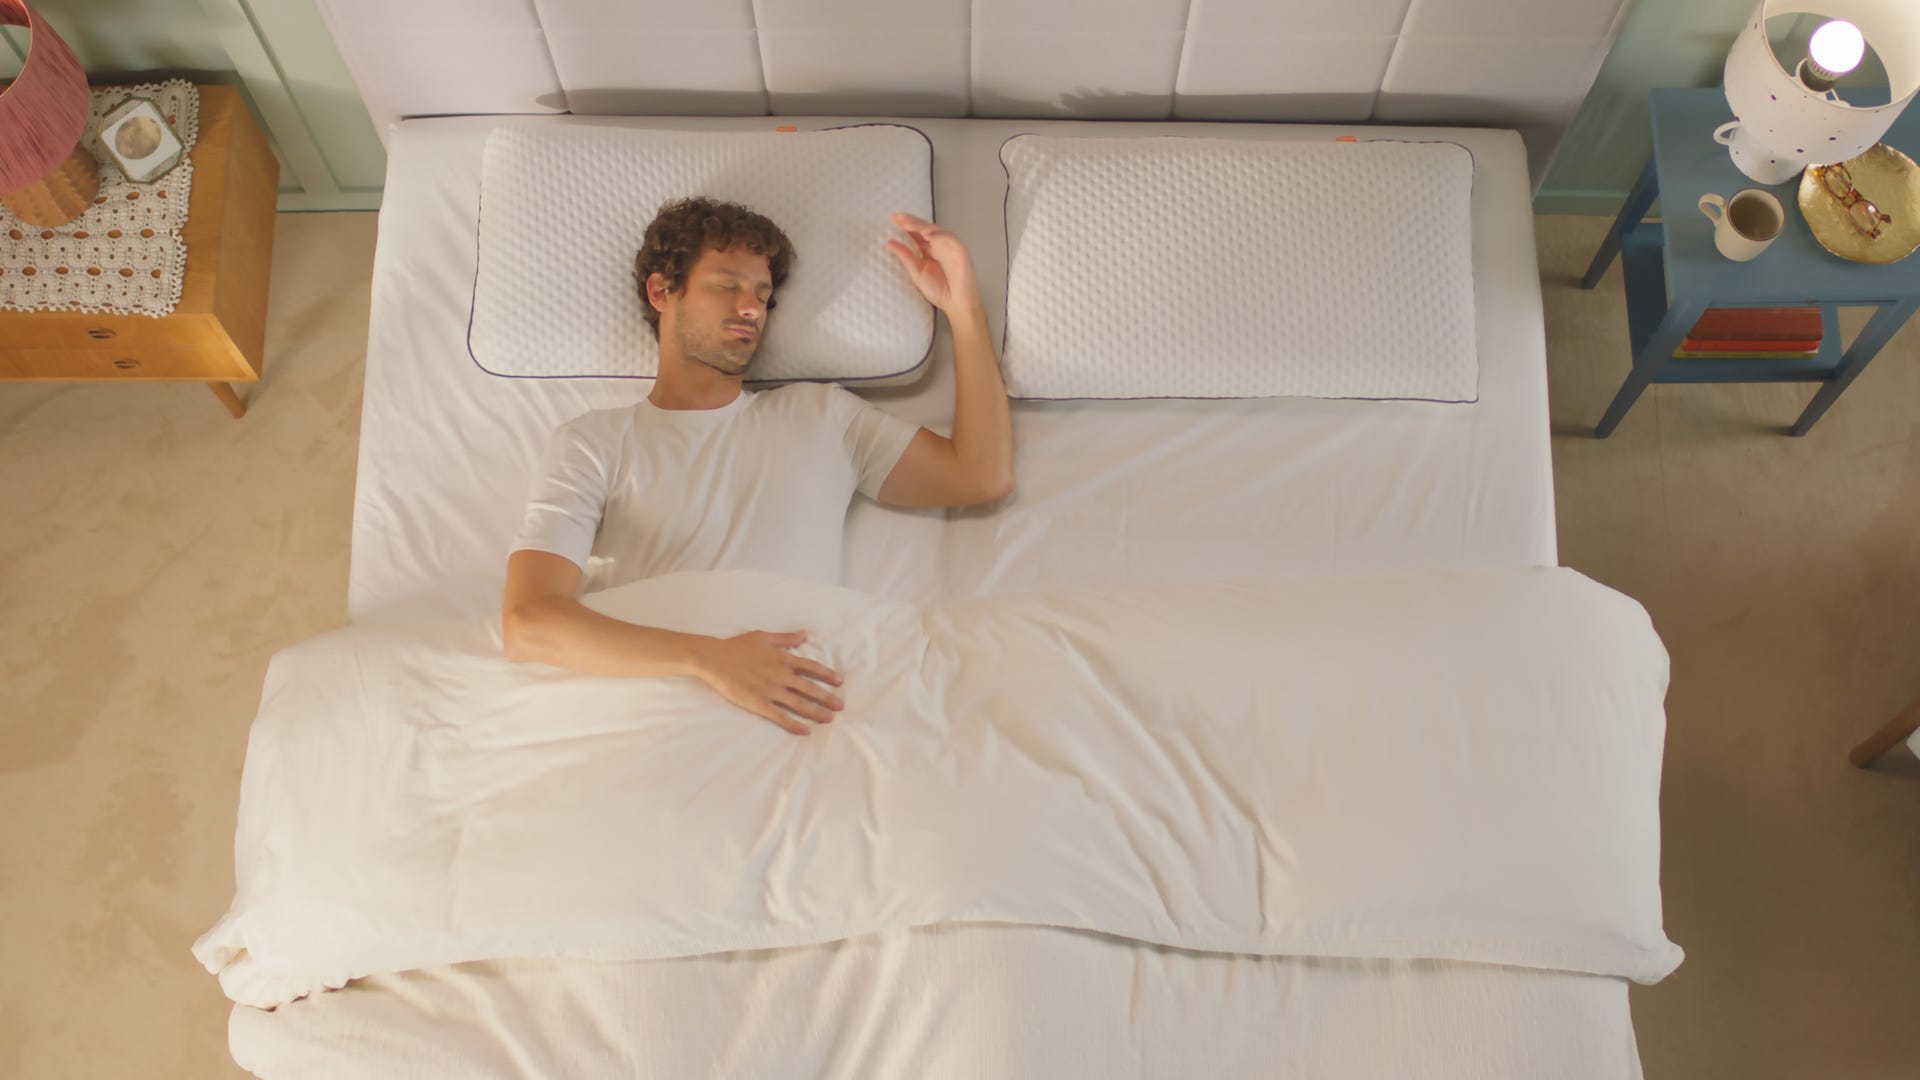 Persona durmiendo en una cama con la cabeza apoyada en una almohada viscoelástica blanca